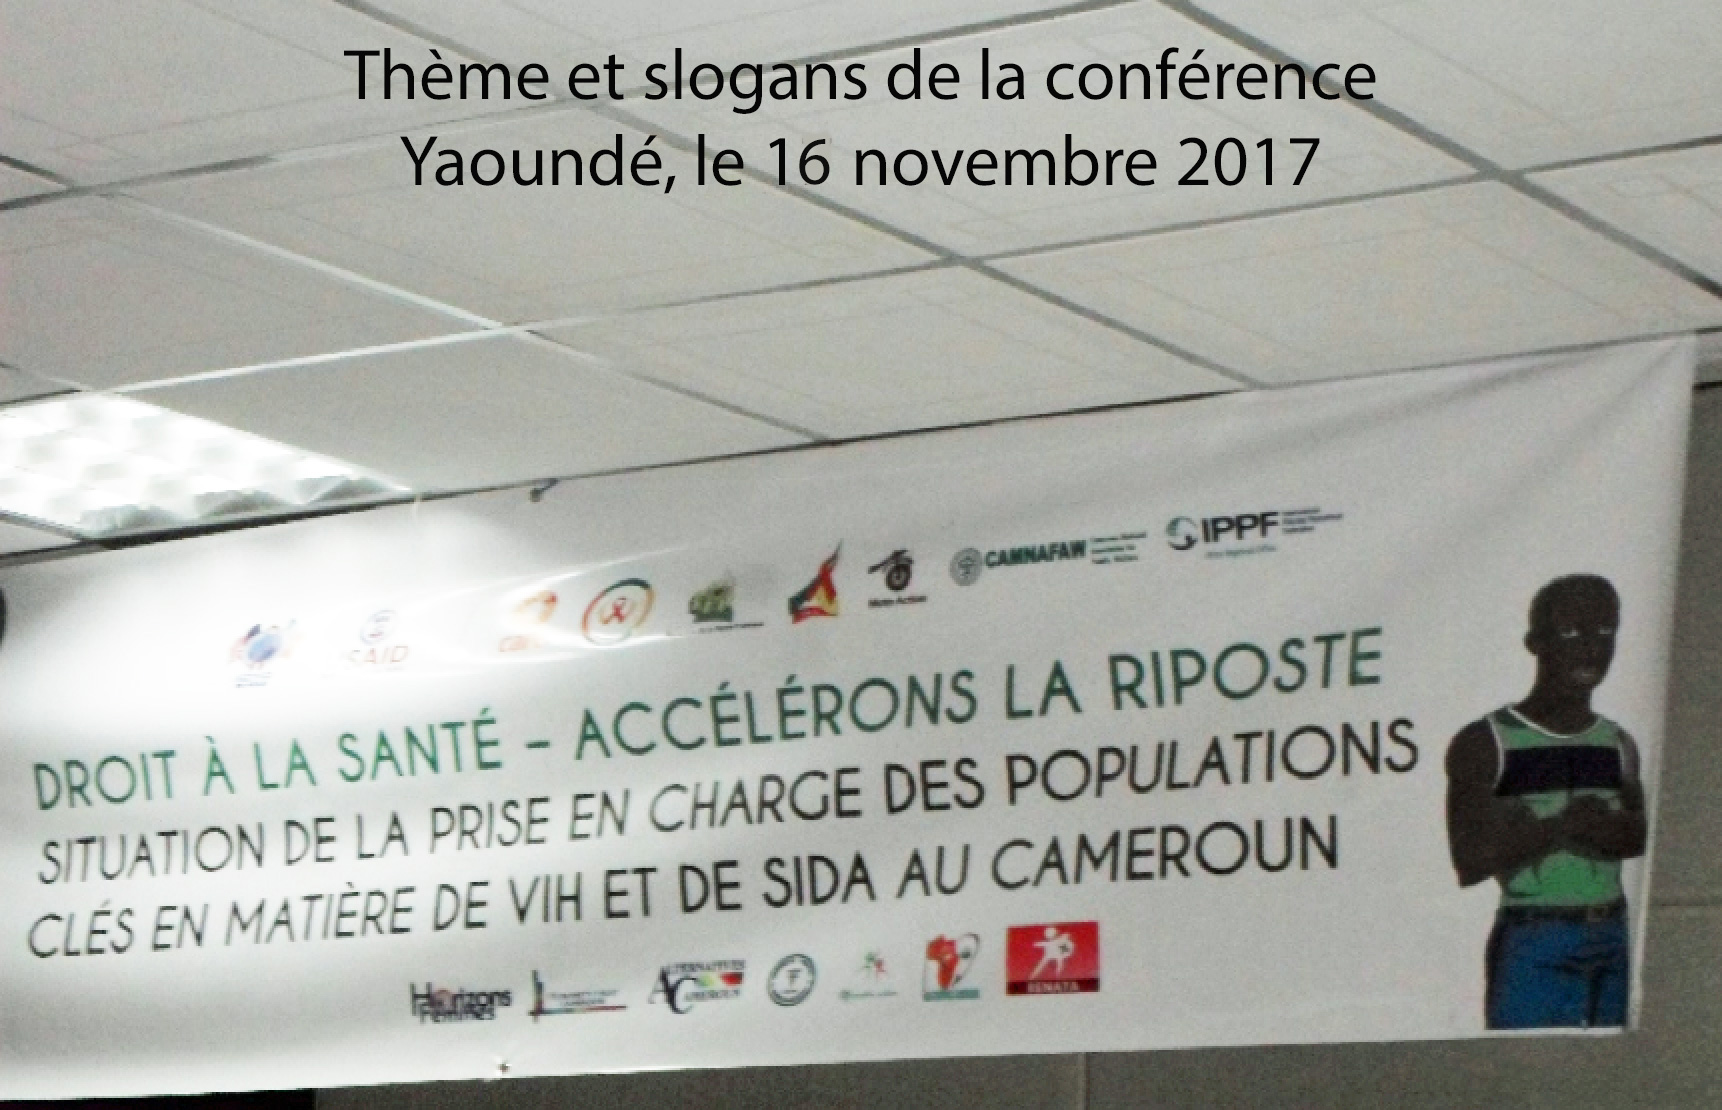 Psy Cause Cameroun : Maladie-Santé-Terrain (MST) N°5. Conférence à Yaoundé pour la prévention du VIH/Sida (16 novembre 2017)